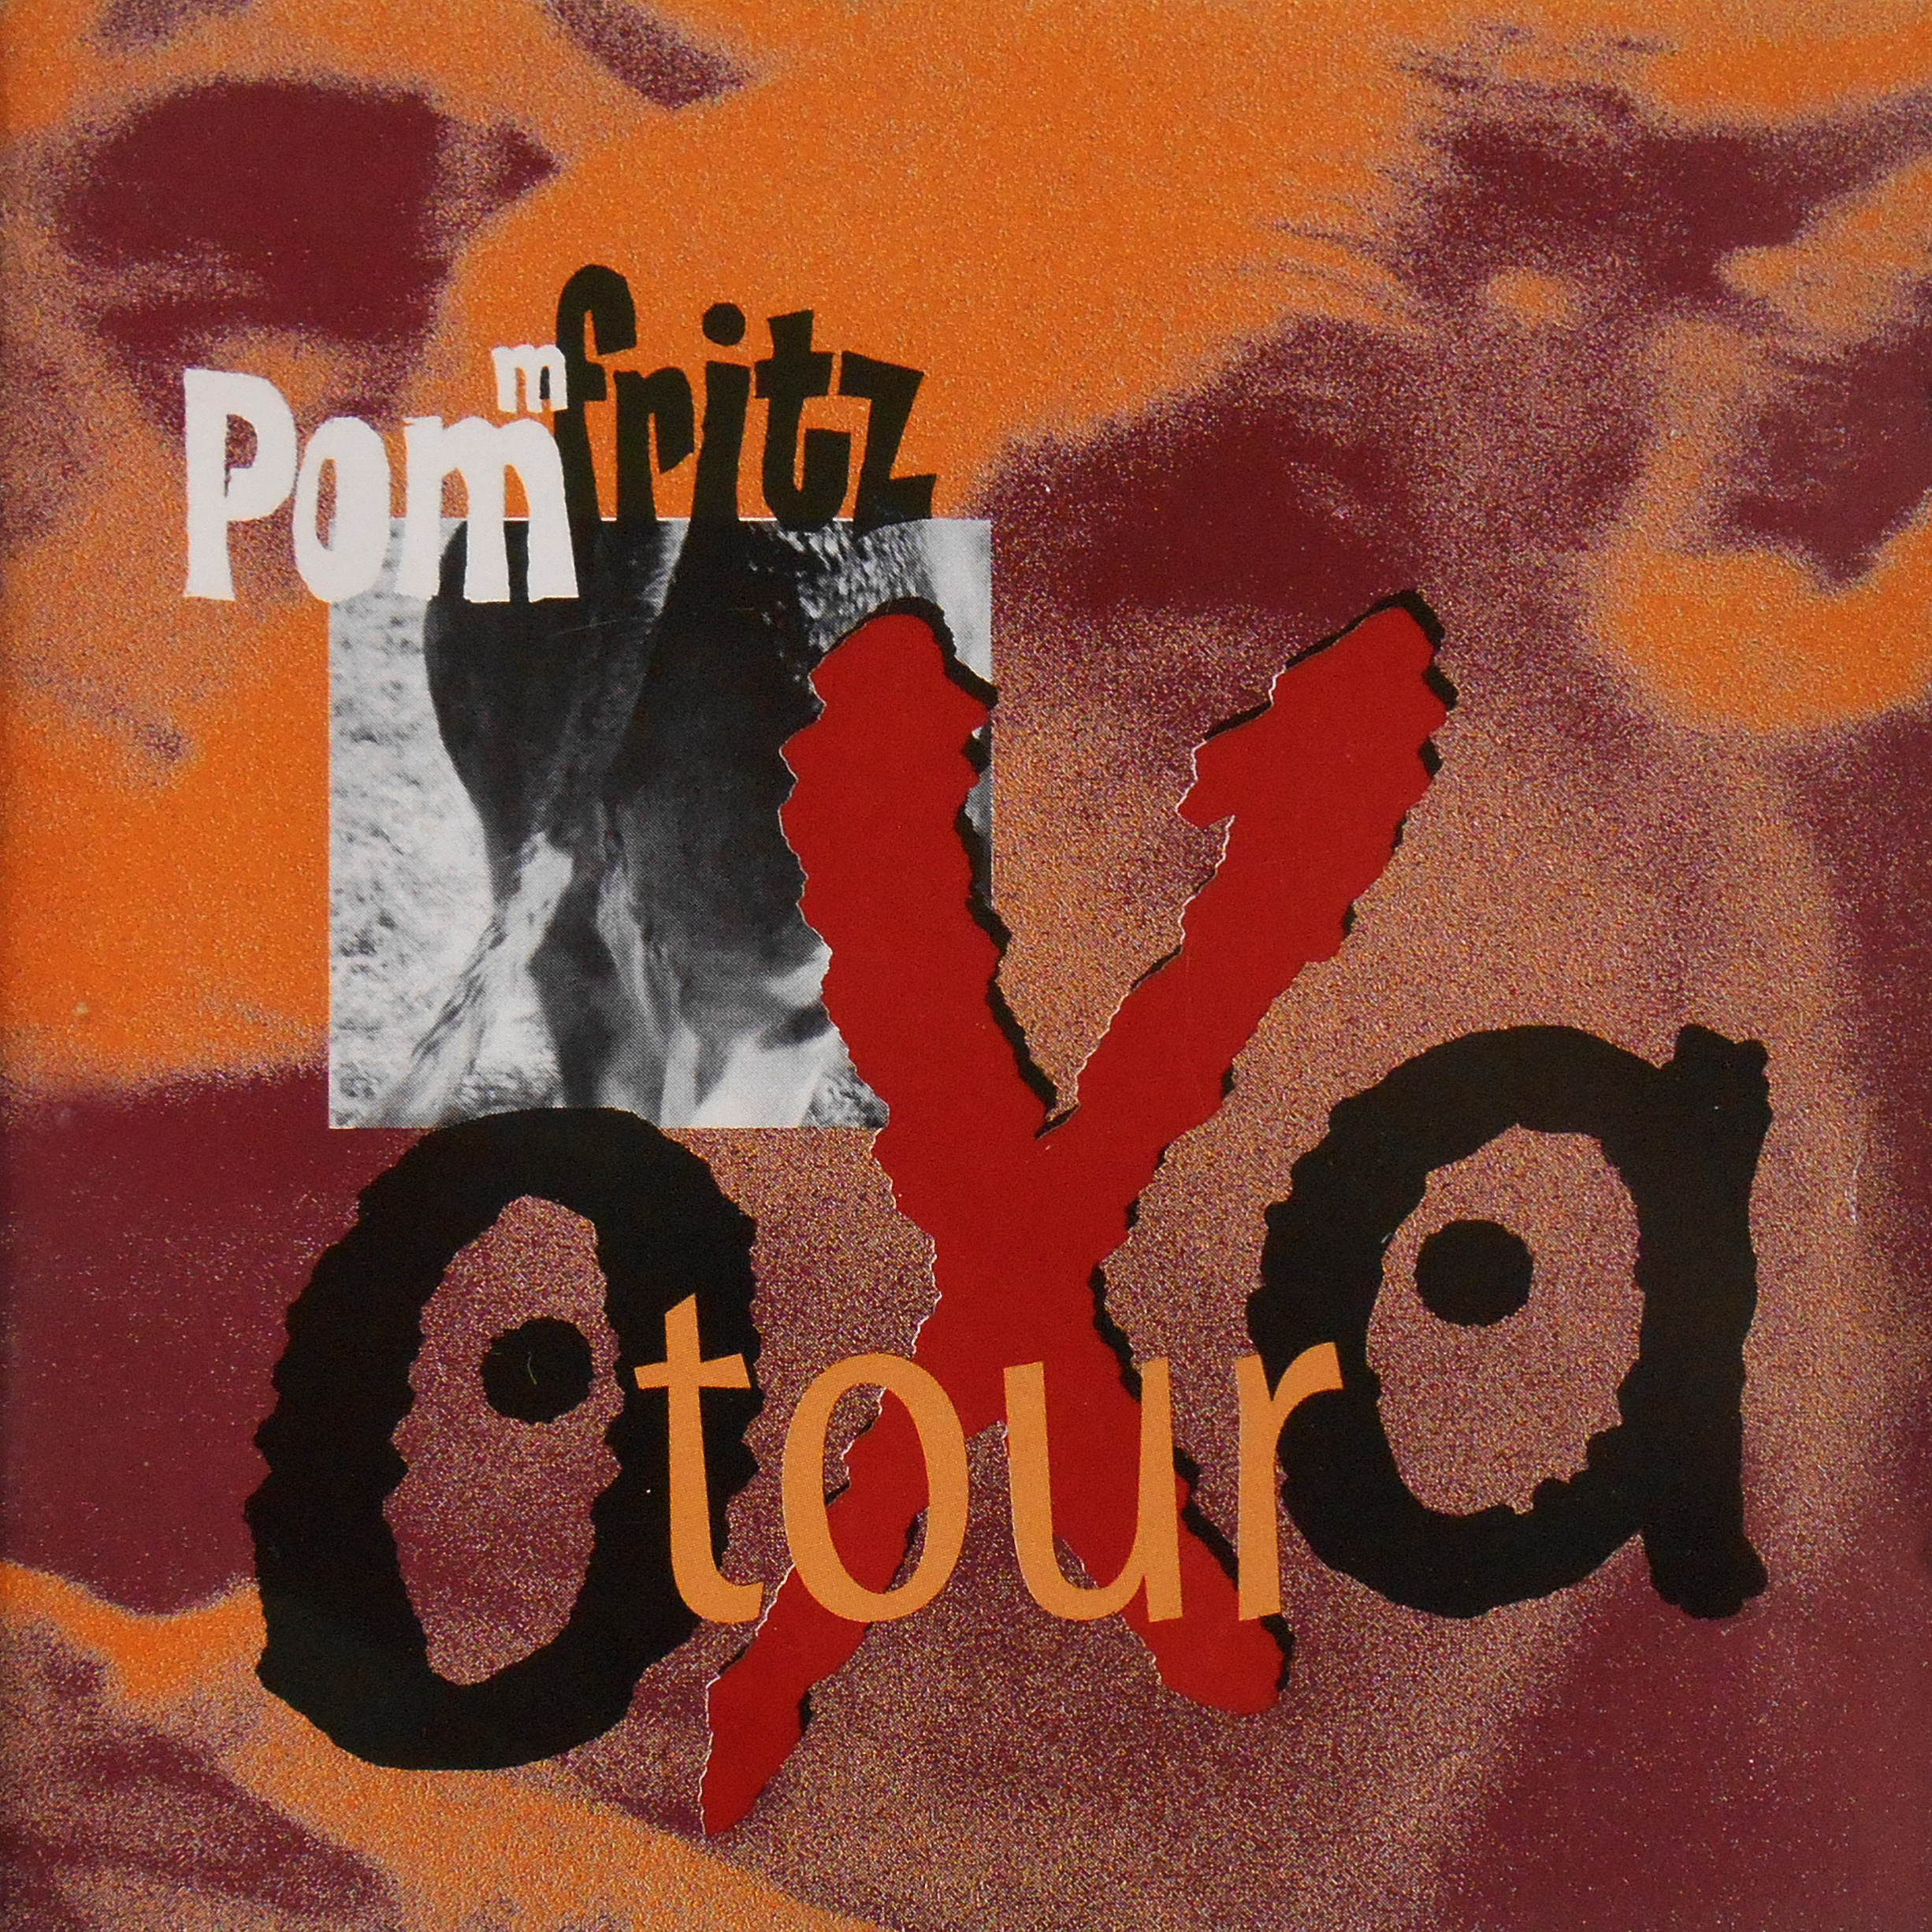 Oxatour – CD (1994)